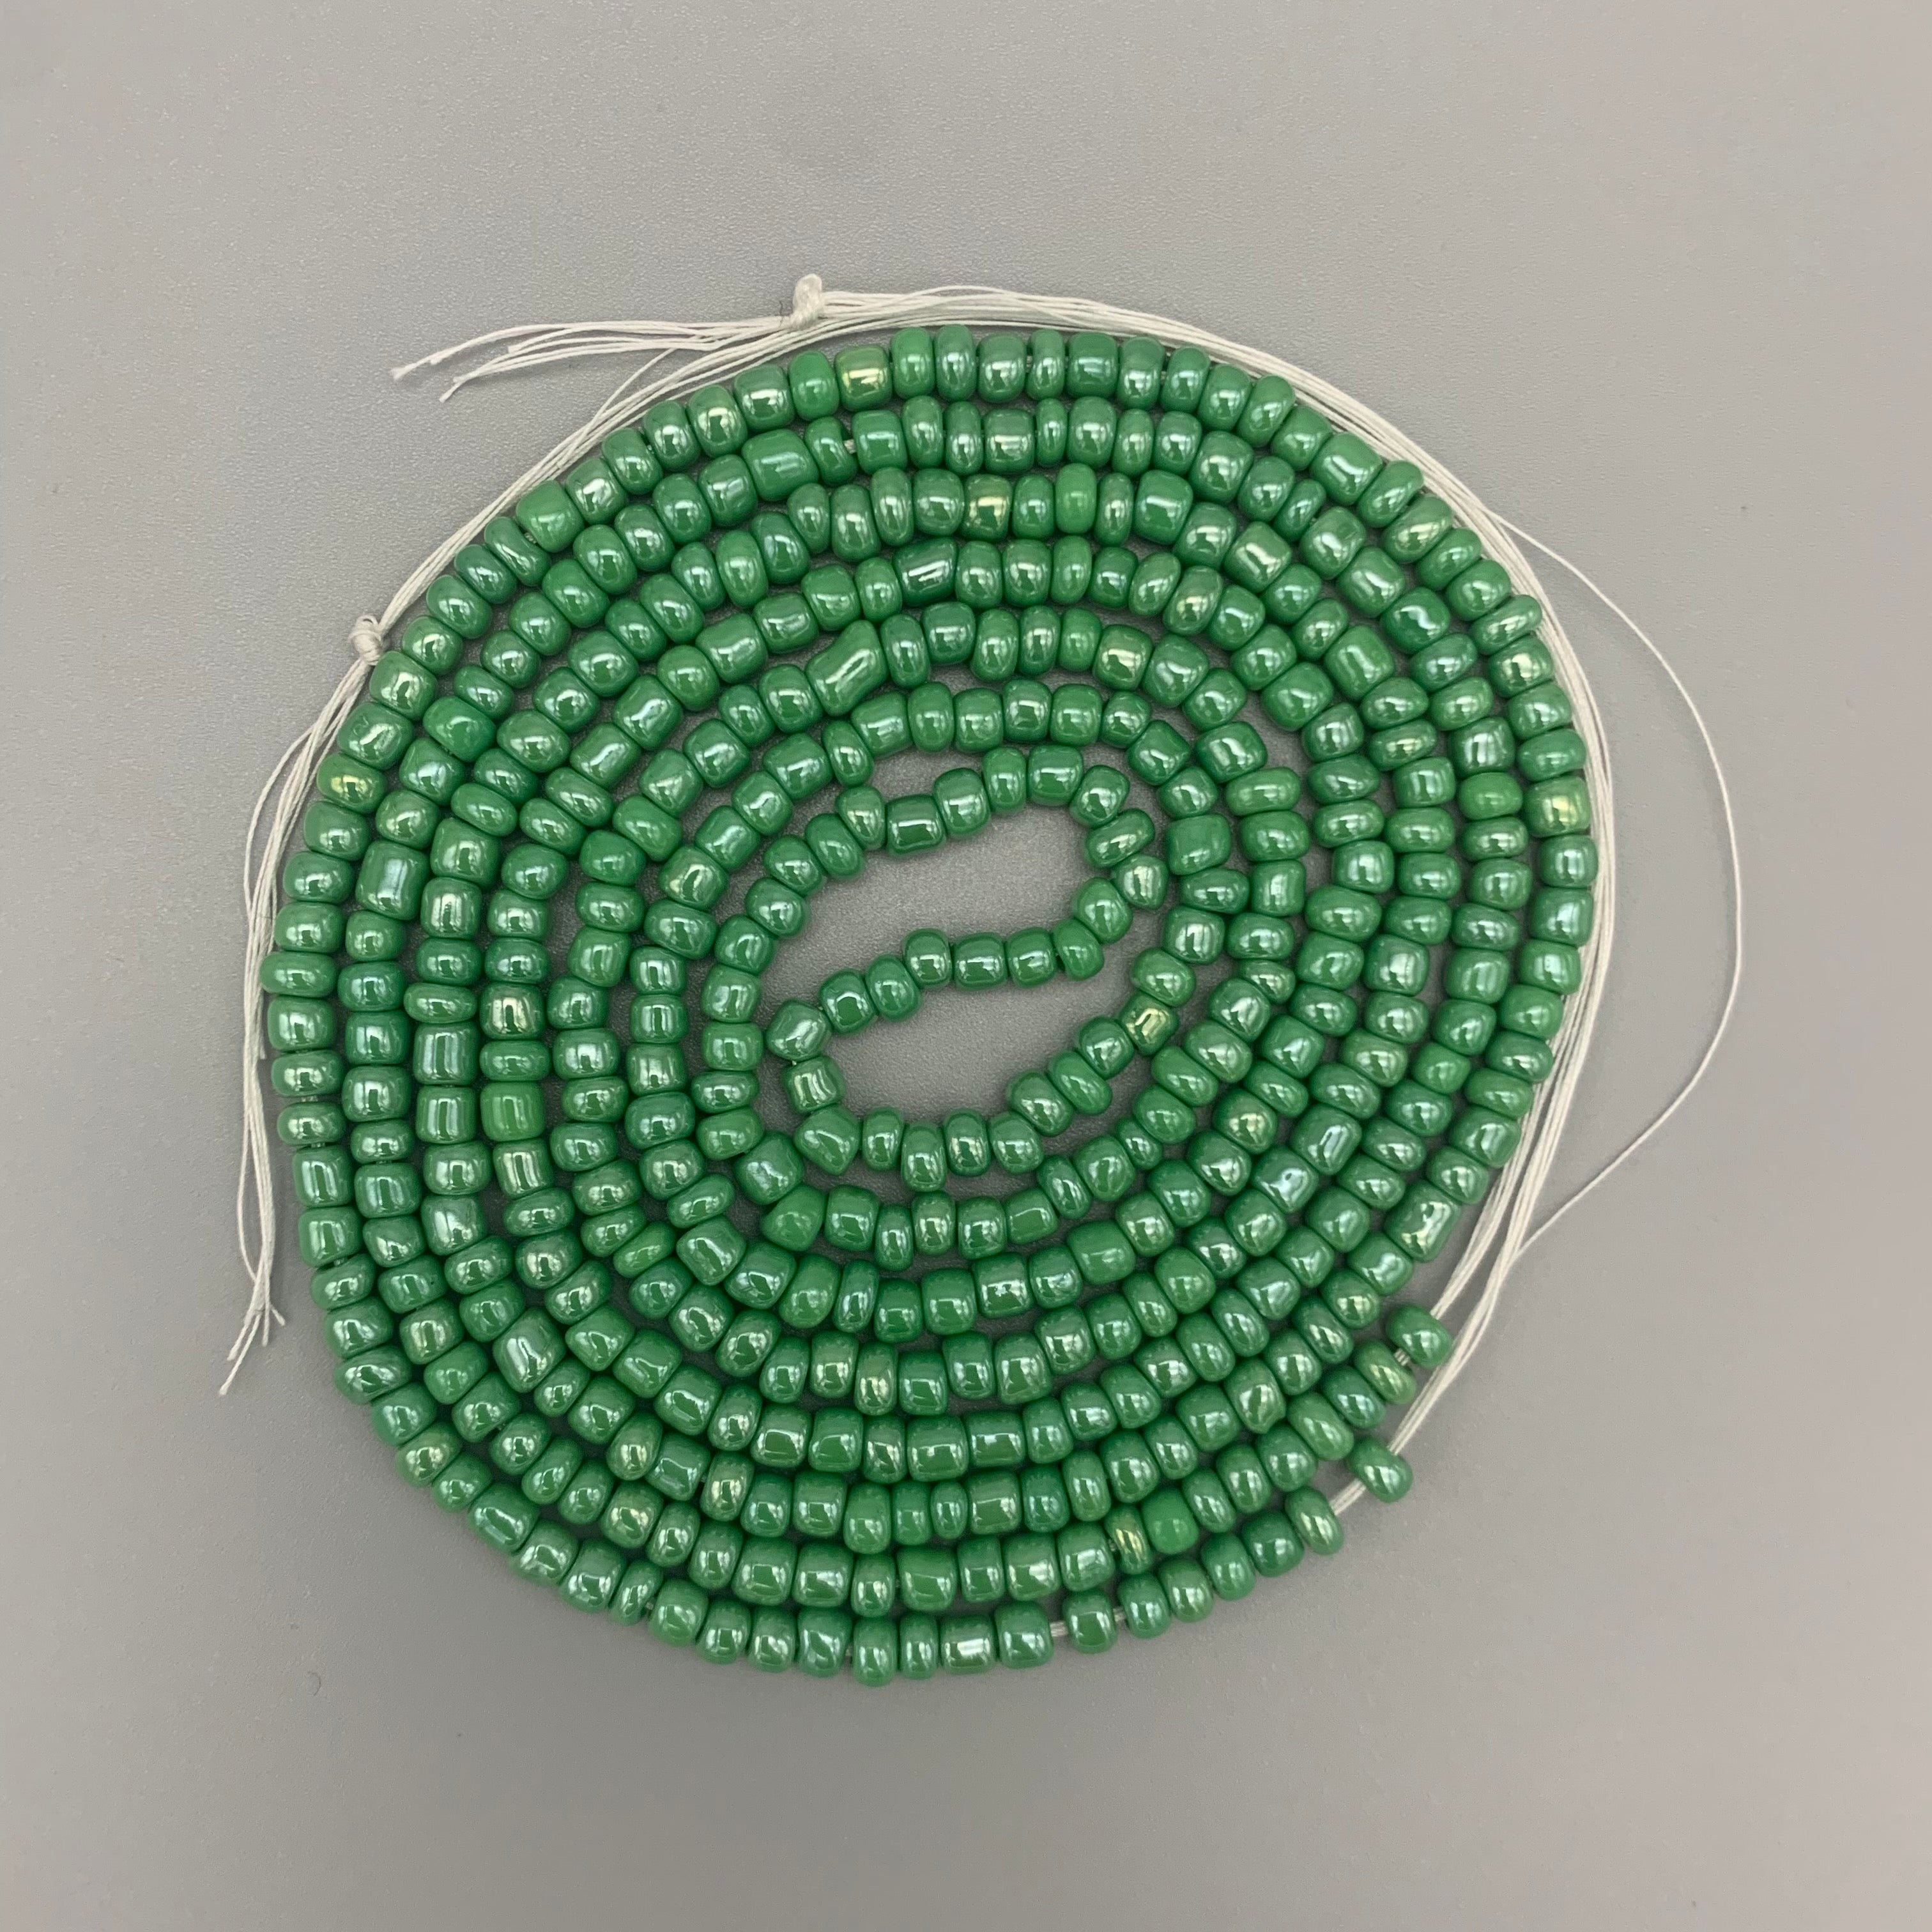 Green Waist Beads (METALLIC)